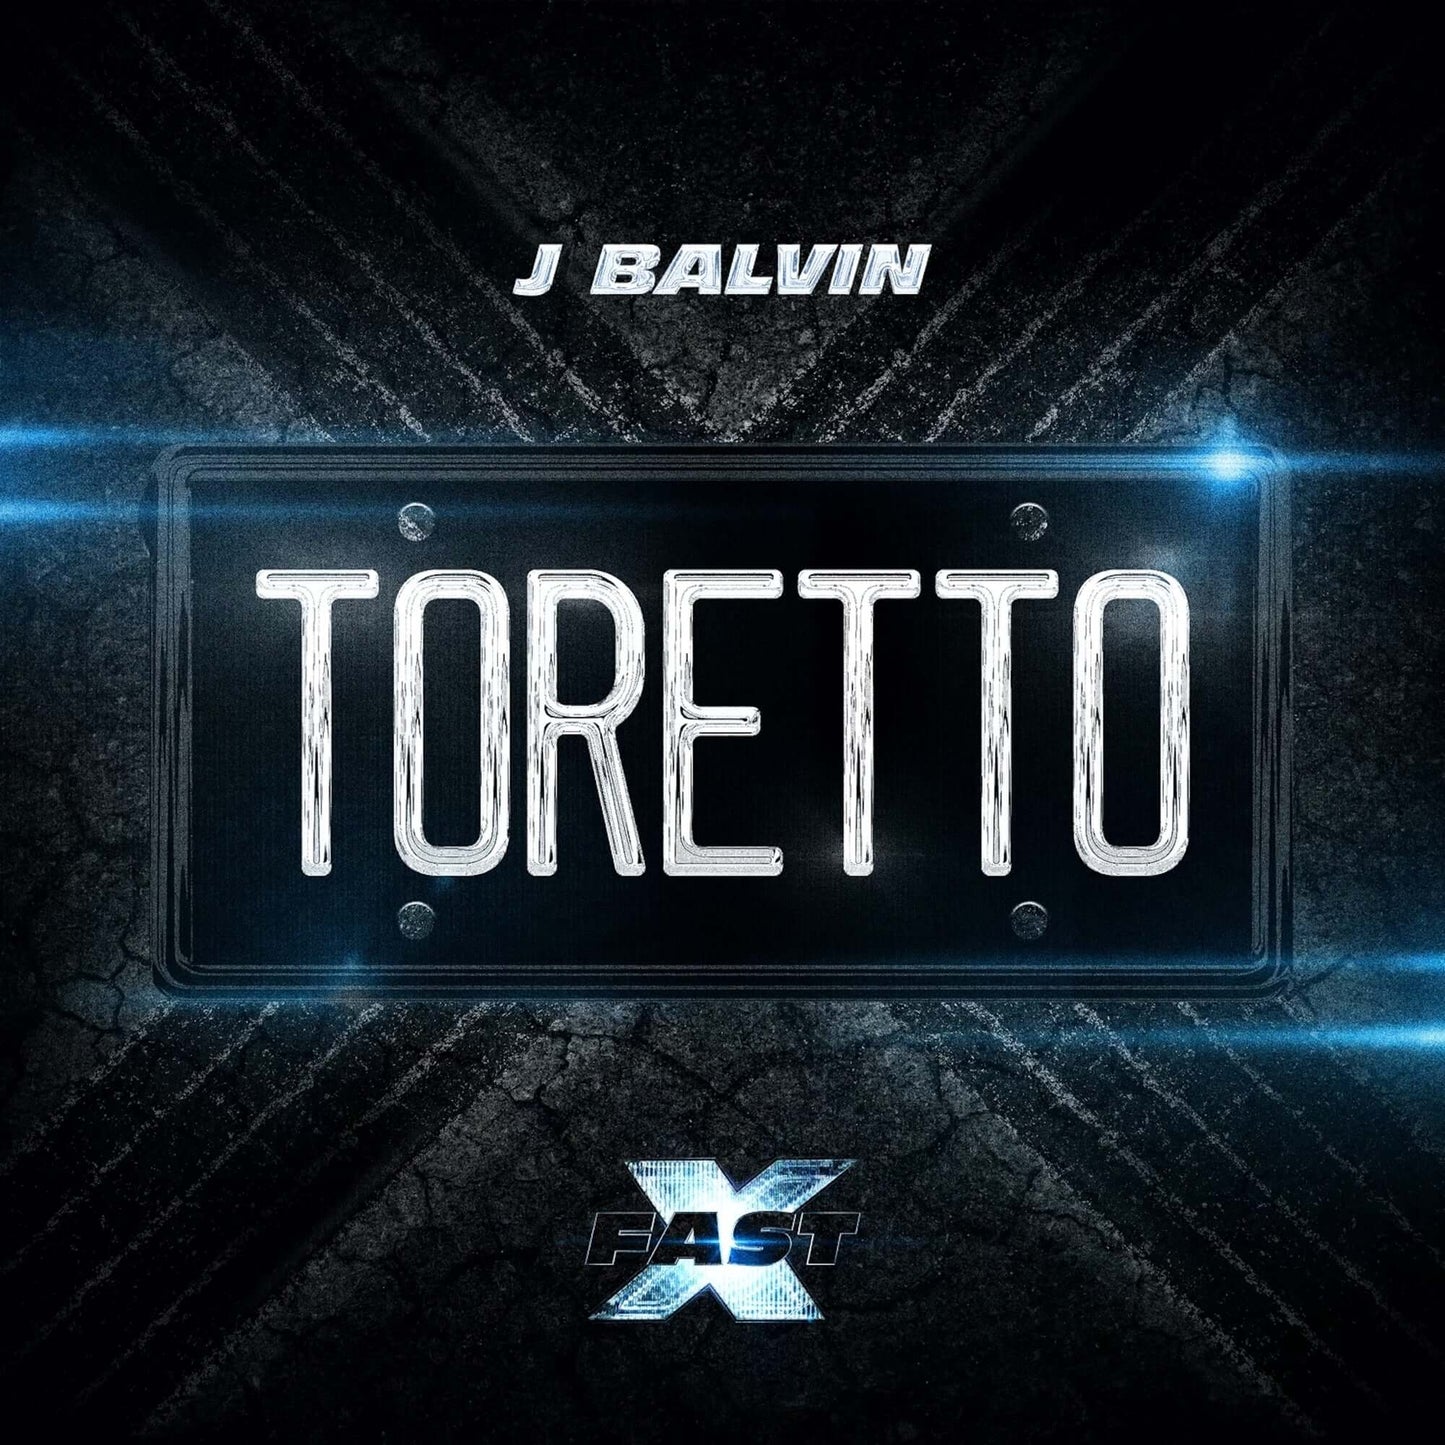 J Balvin - Toretto (Studio Acapella)